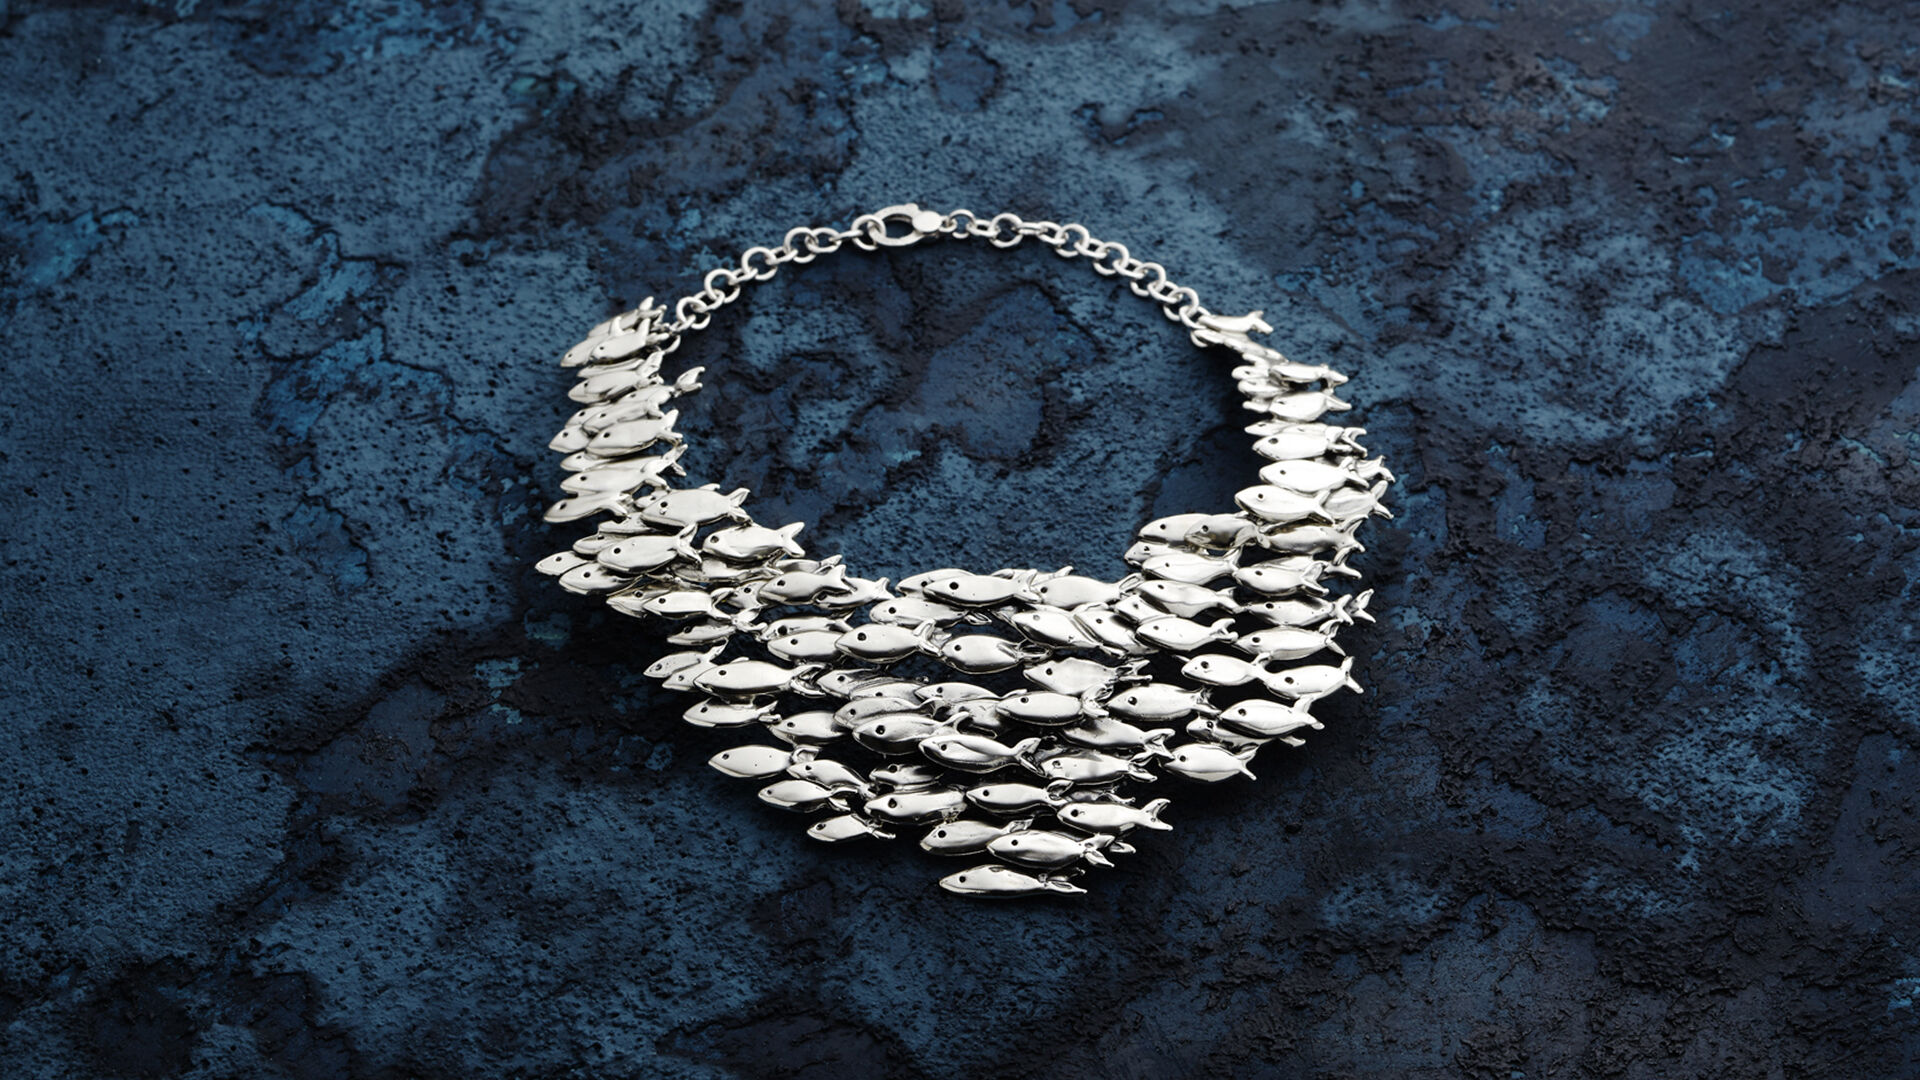 Nautilus fish necklace